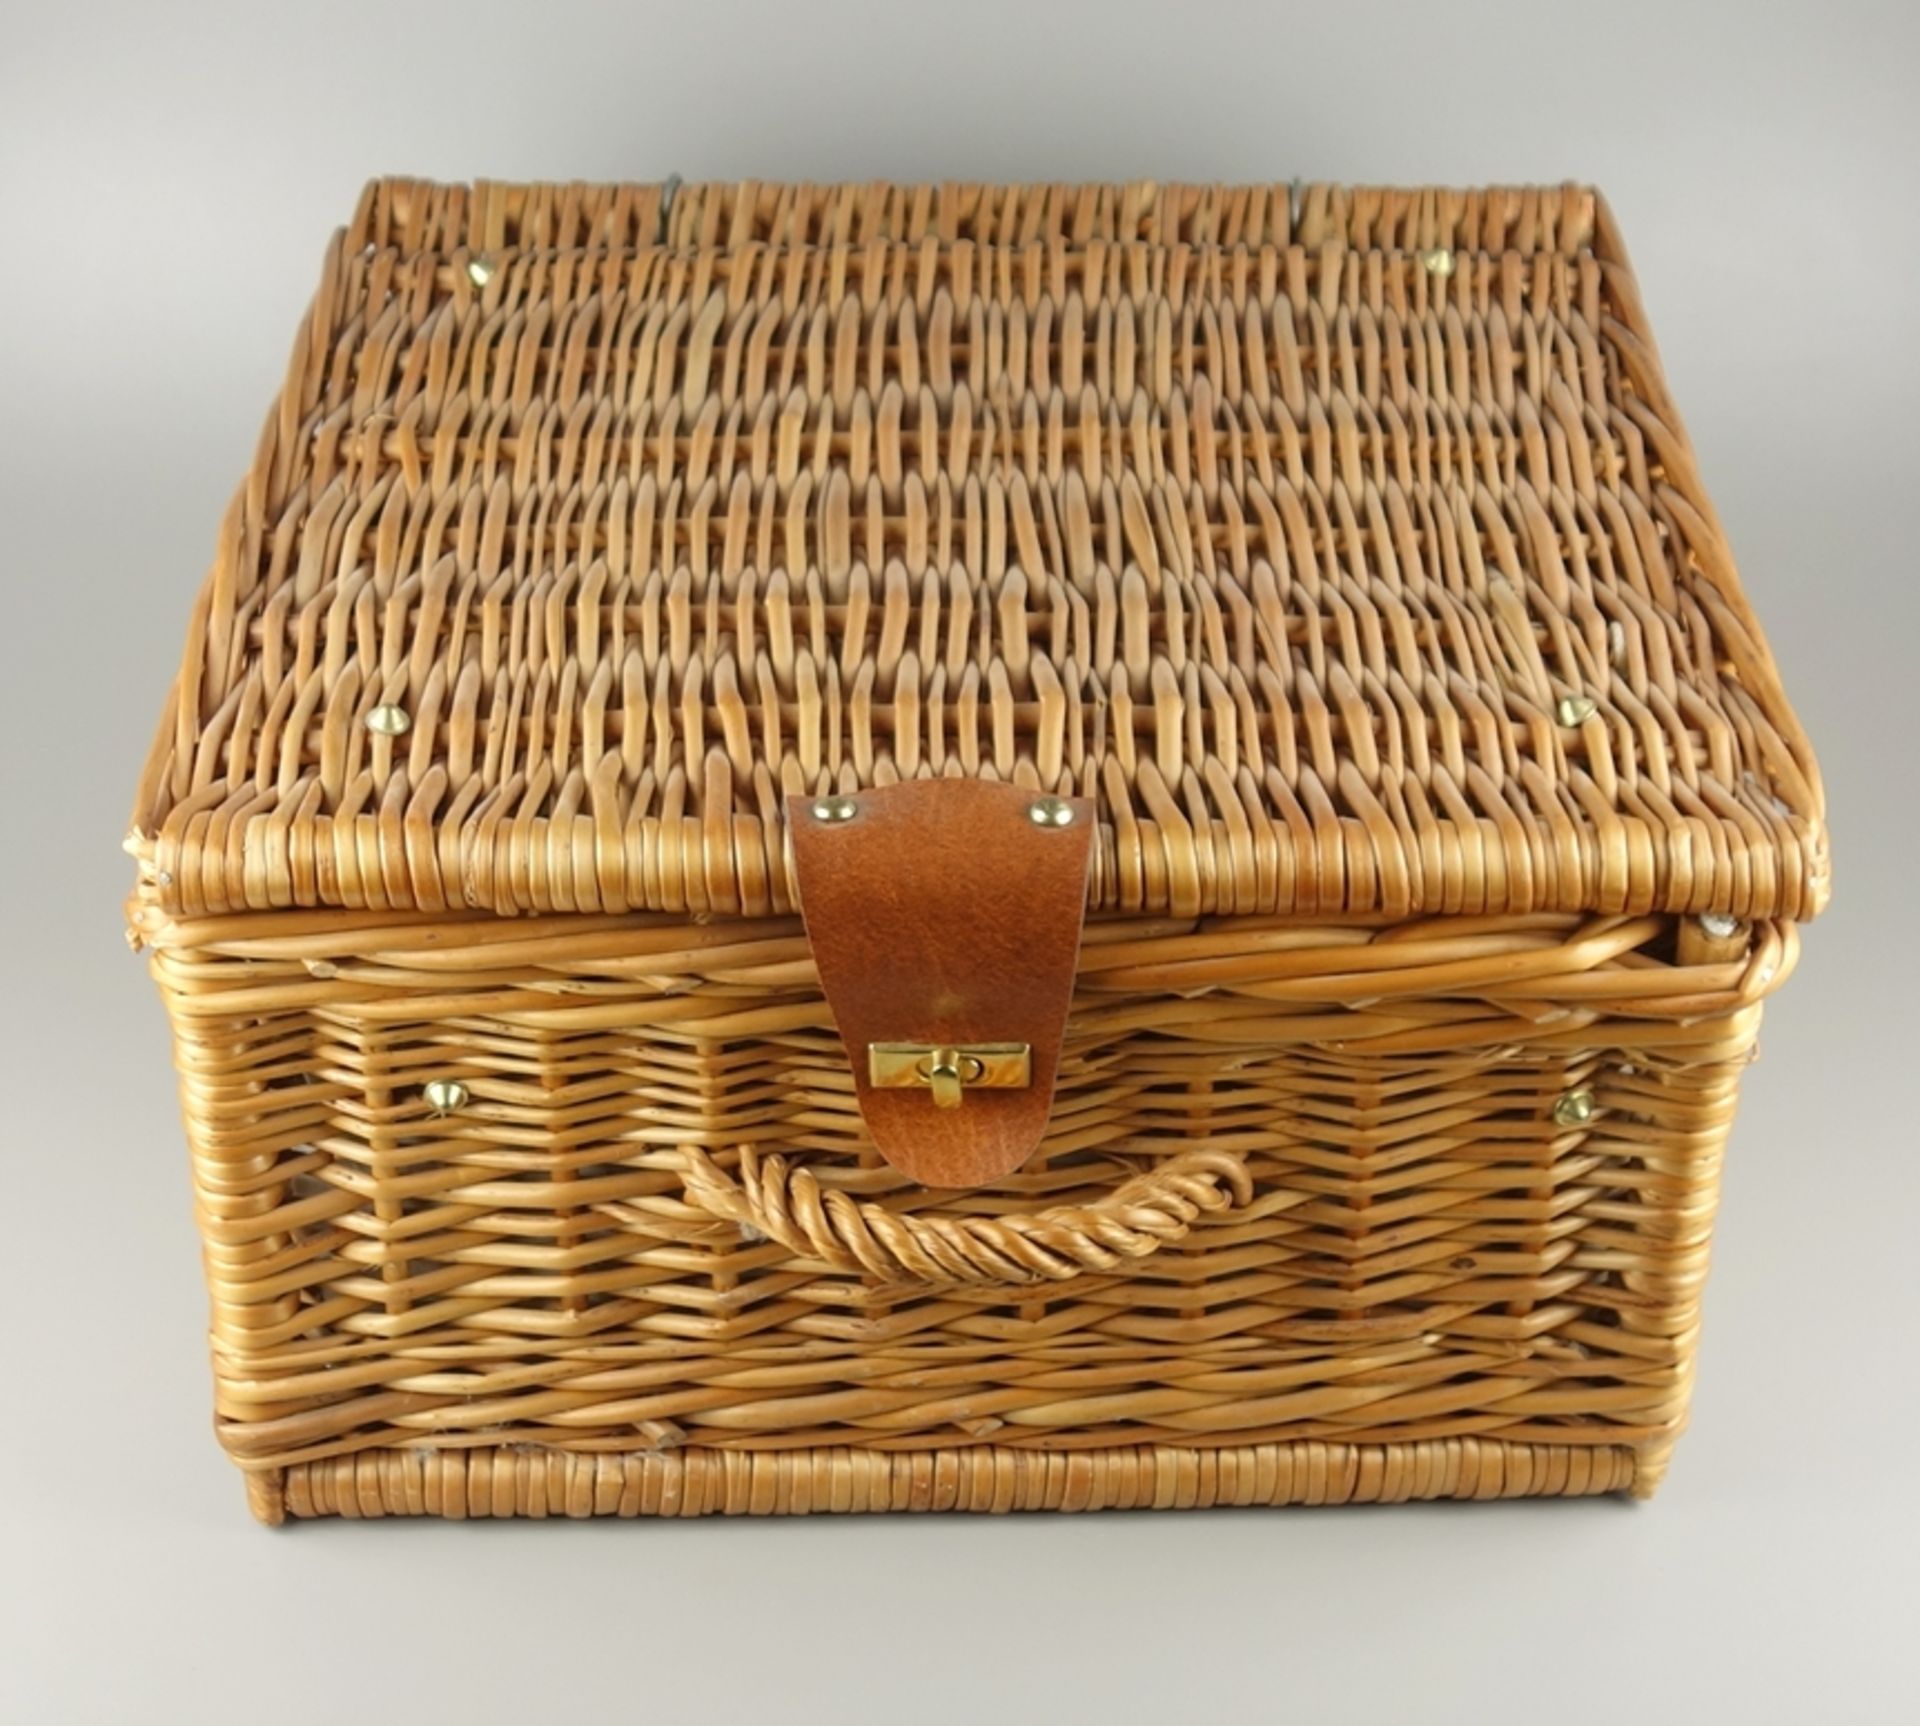 Picknick-Koffer, bestückt mit Porzellan und Besteck für 2 Pers.